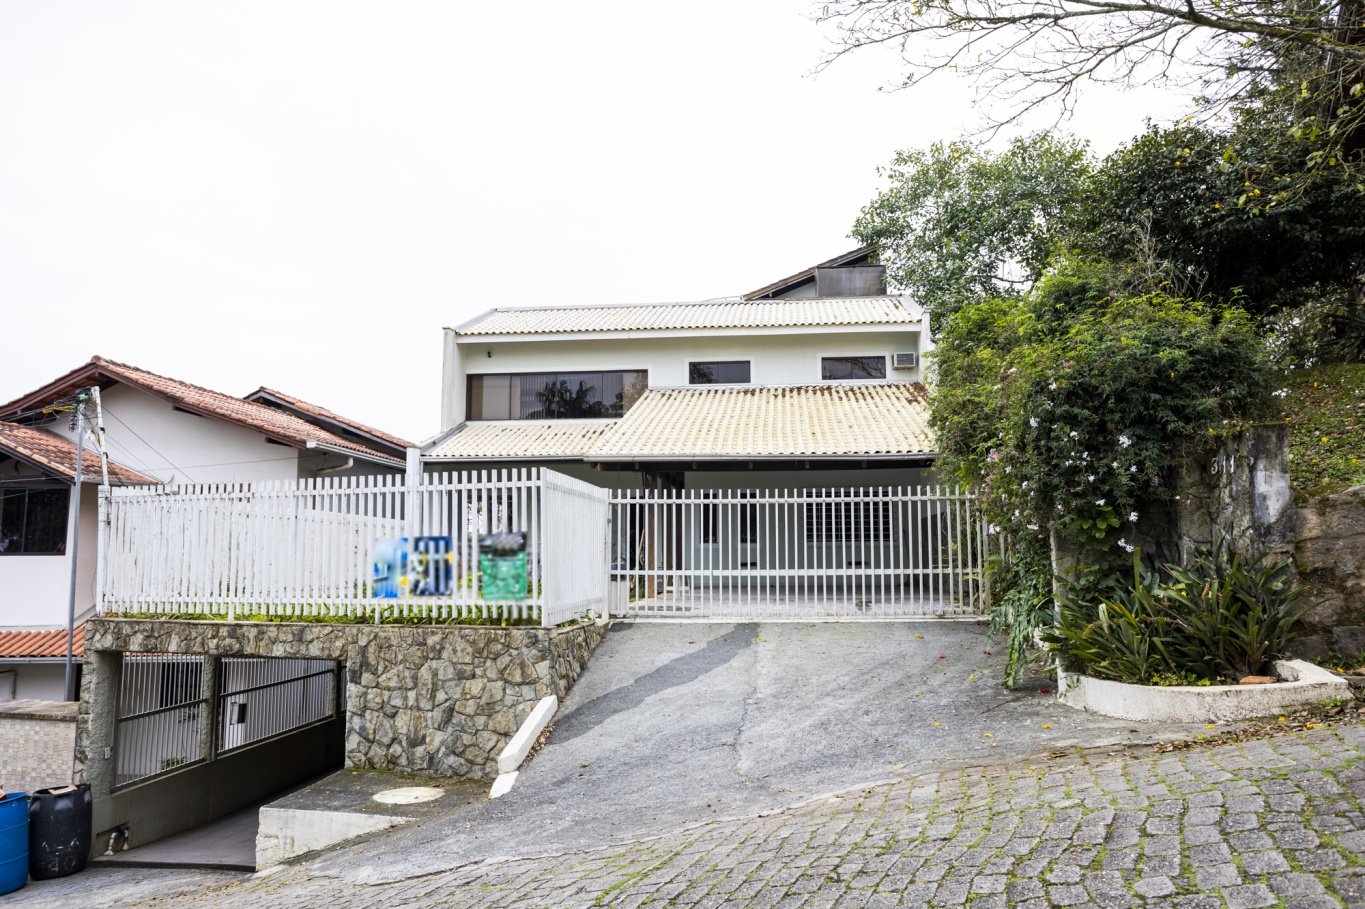 Casa á venda no bairro Ponta aguda em Blumenau, casa com 5 quartos, casa com área de festas, blumenau, imobiliaria em blumenau, dinamica sul